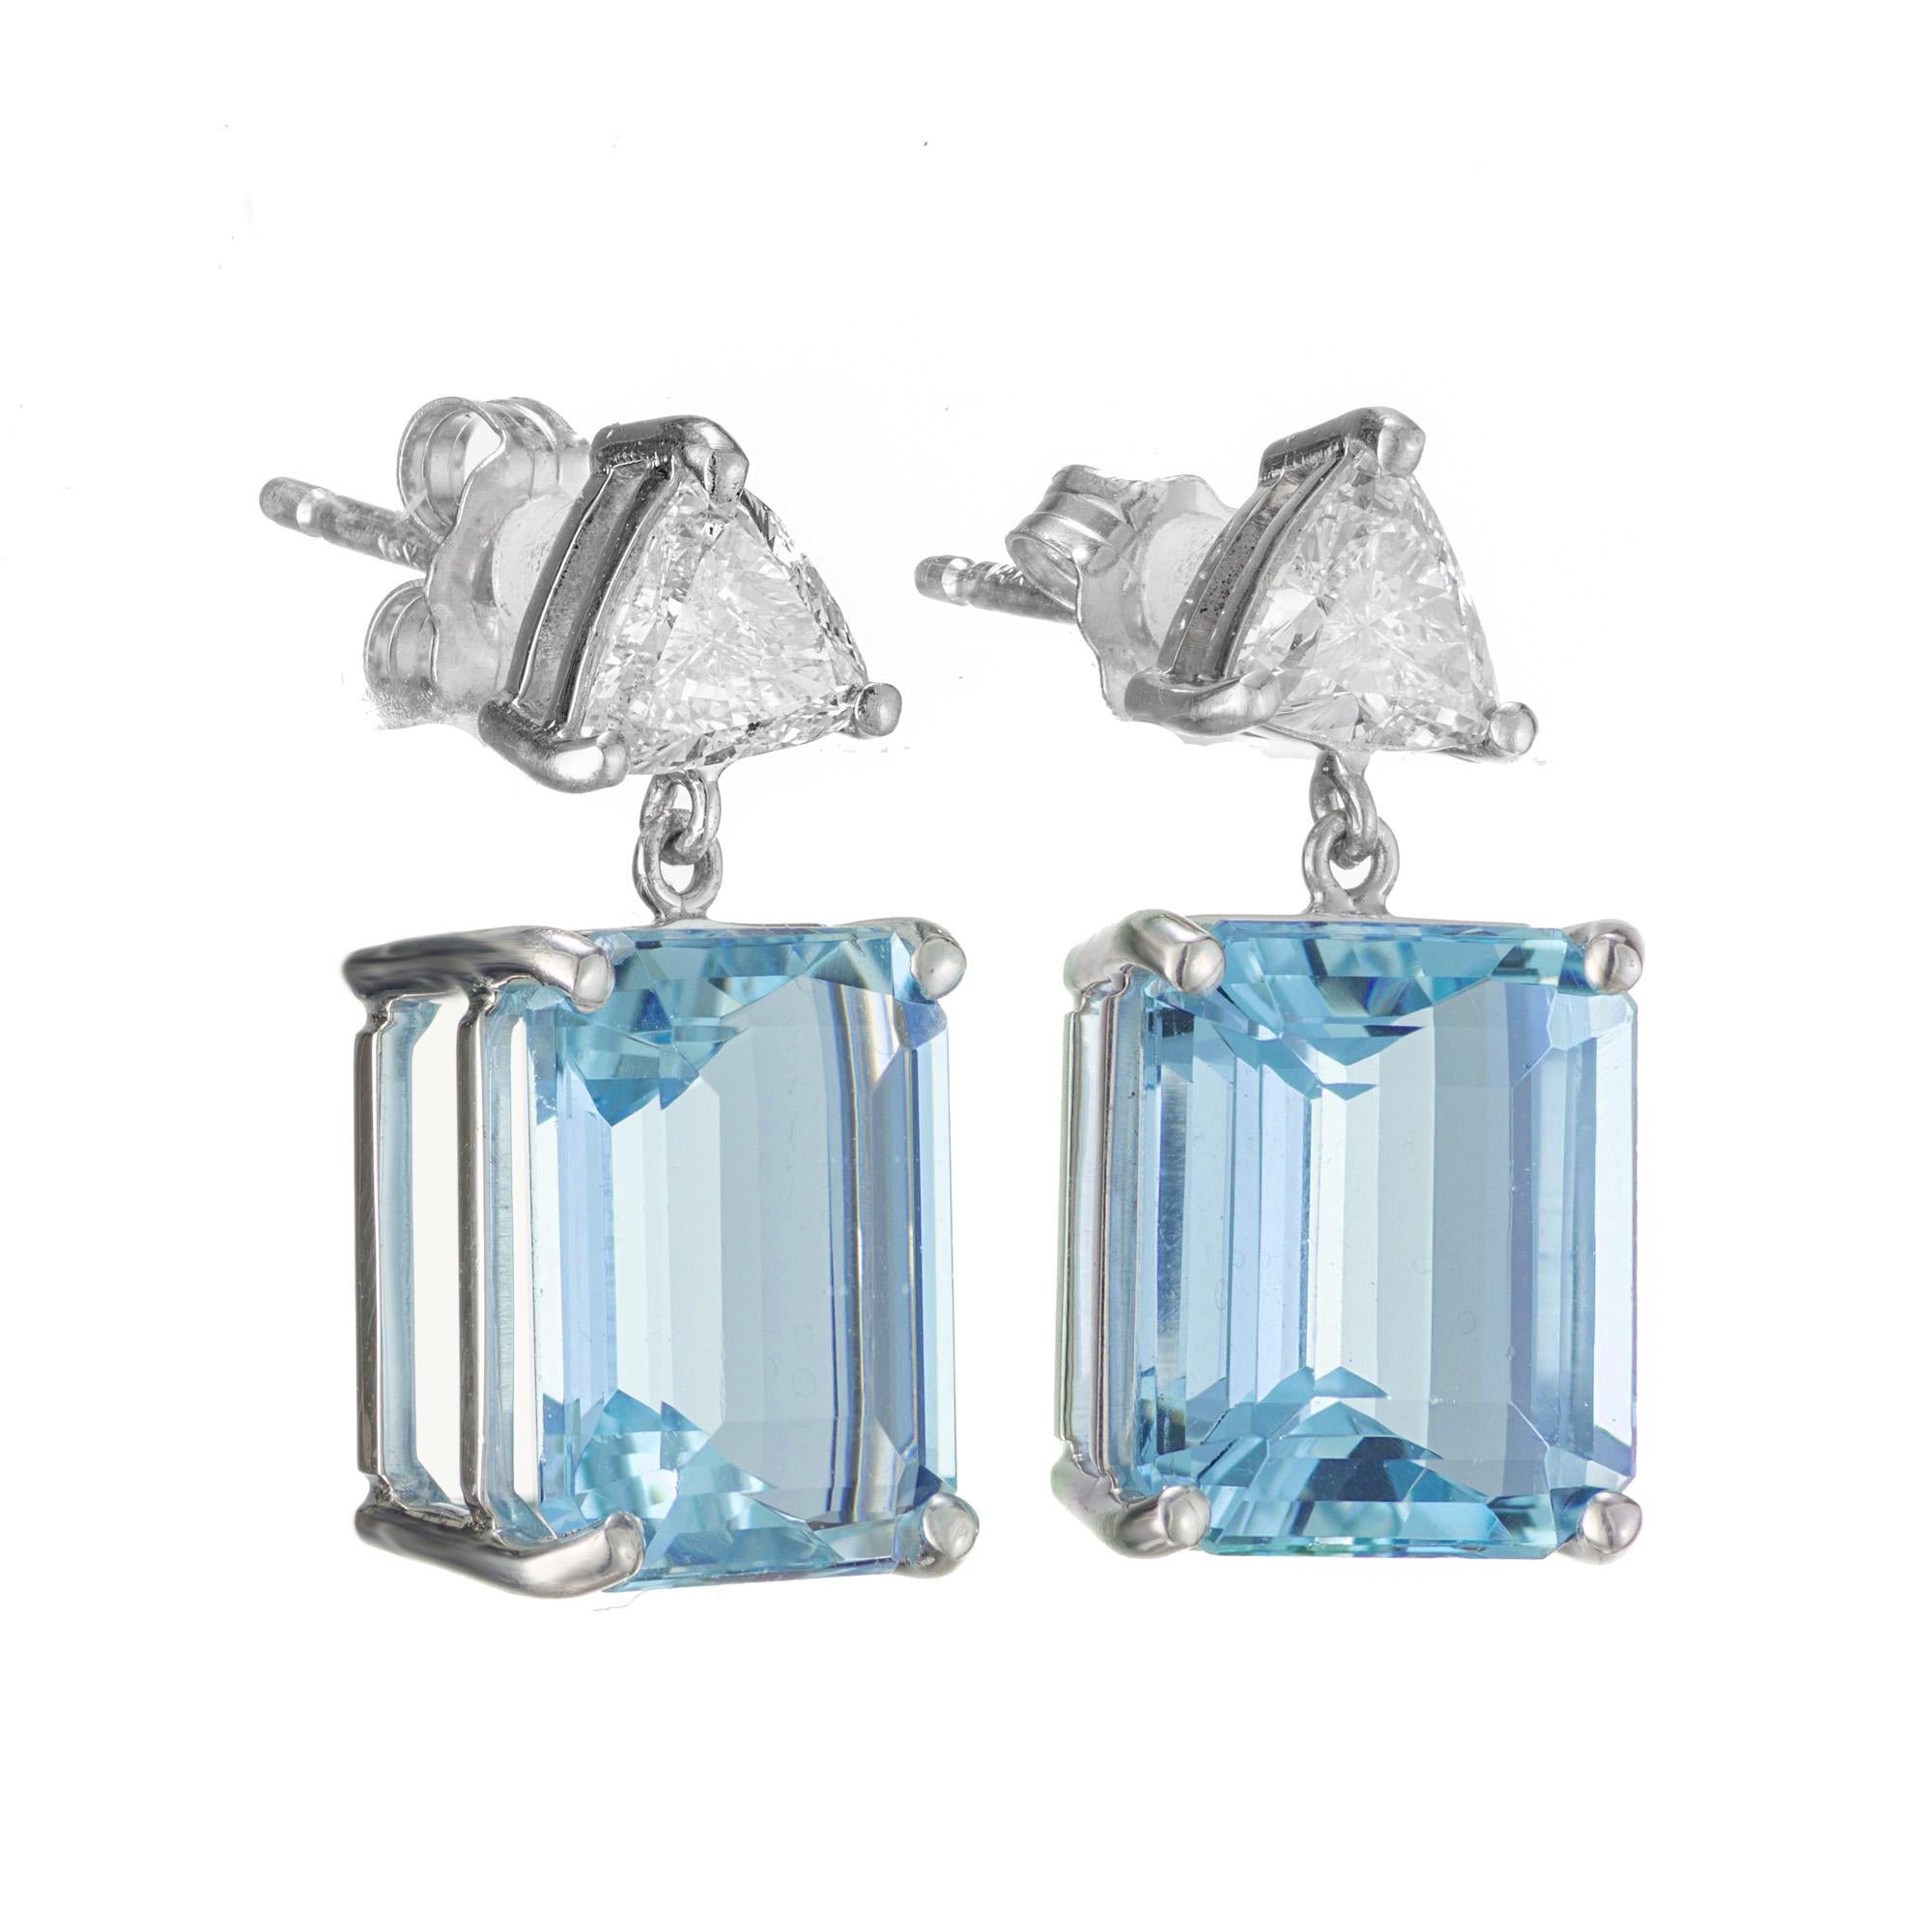 Aquamarin und Diamant Ohrringe. 2 blaue Aquamarine im Smaragdschliff mit einem Gesamtgewicht von 7,06 ct. in einer vierzackigen Fassung aus 18 Karat Weißgold, ergänzt durch 2 Diamanten im Trillantschliff. Diese wunderschönen Aquaschmuckstücke